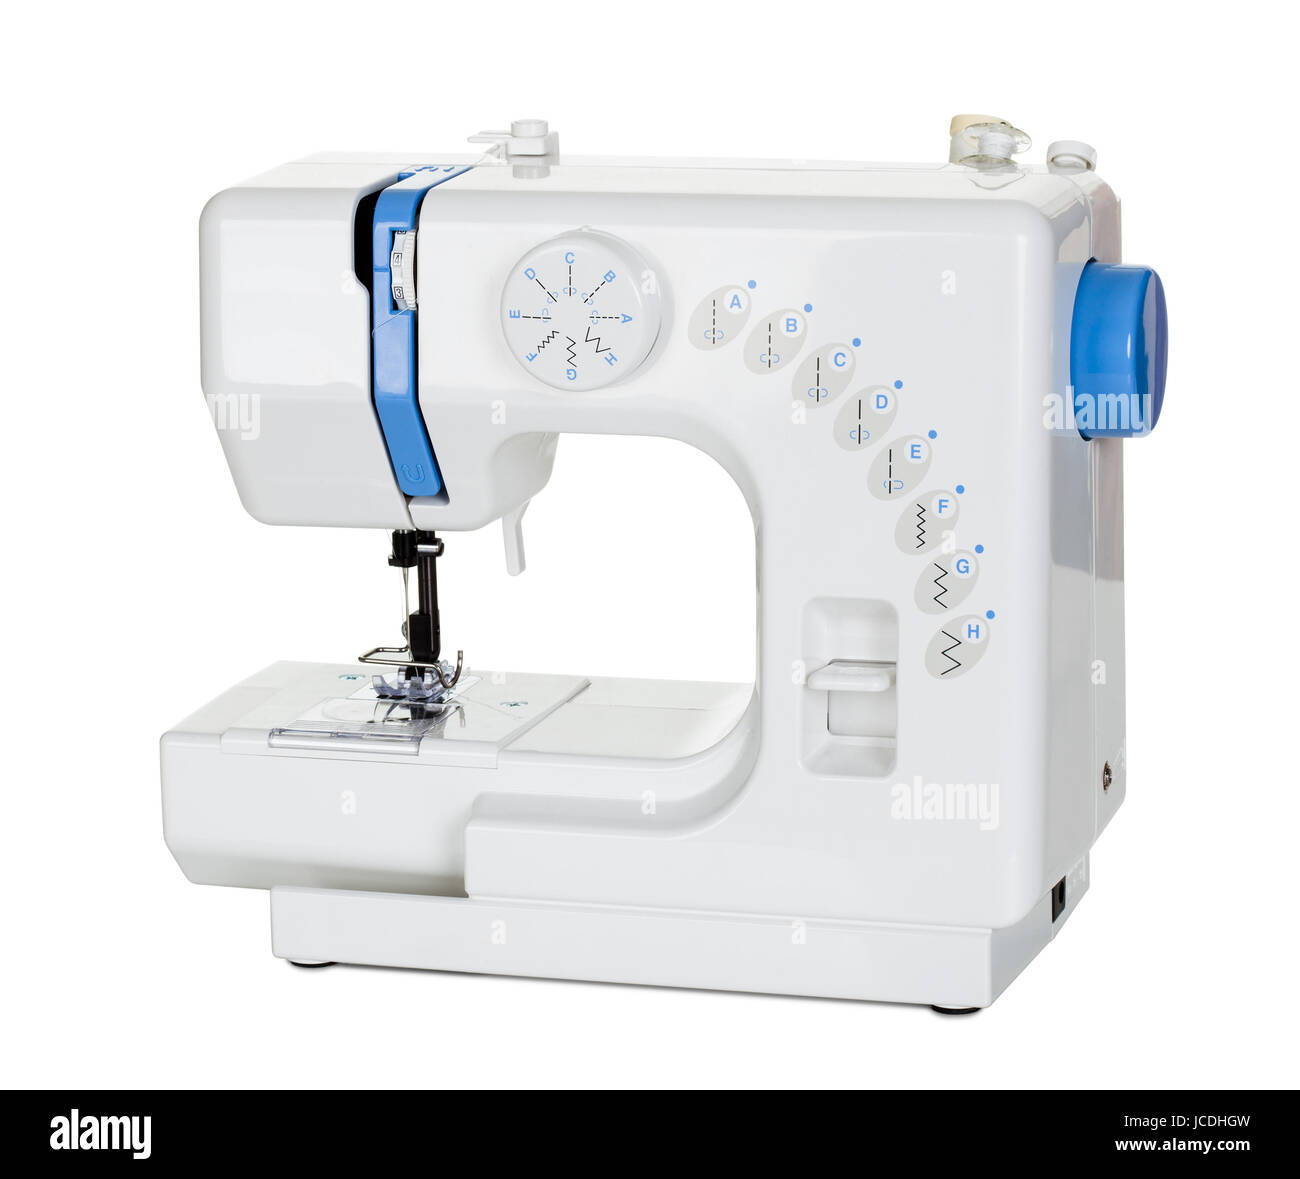 Costurera herramienta máquina de coser aislado bosquejo de ropa